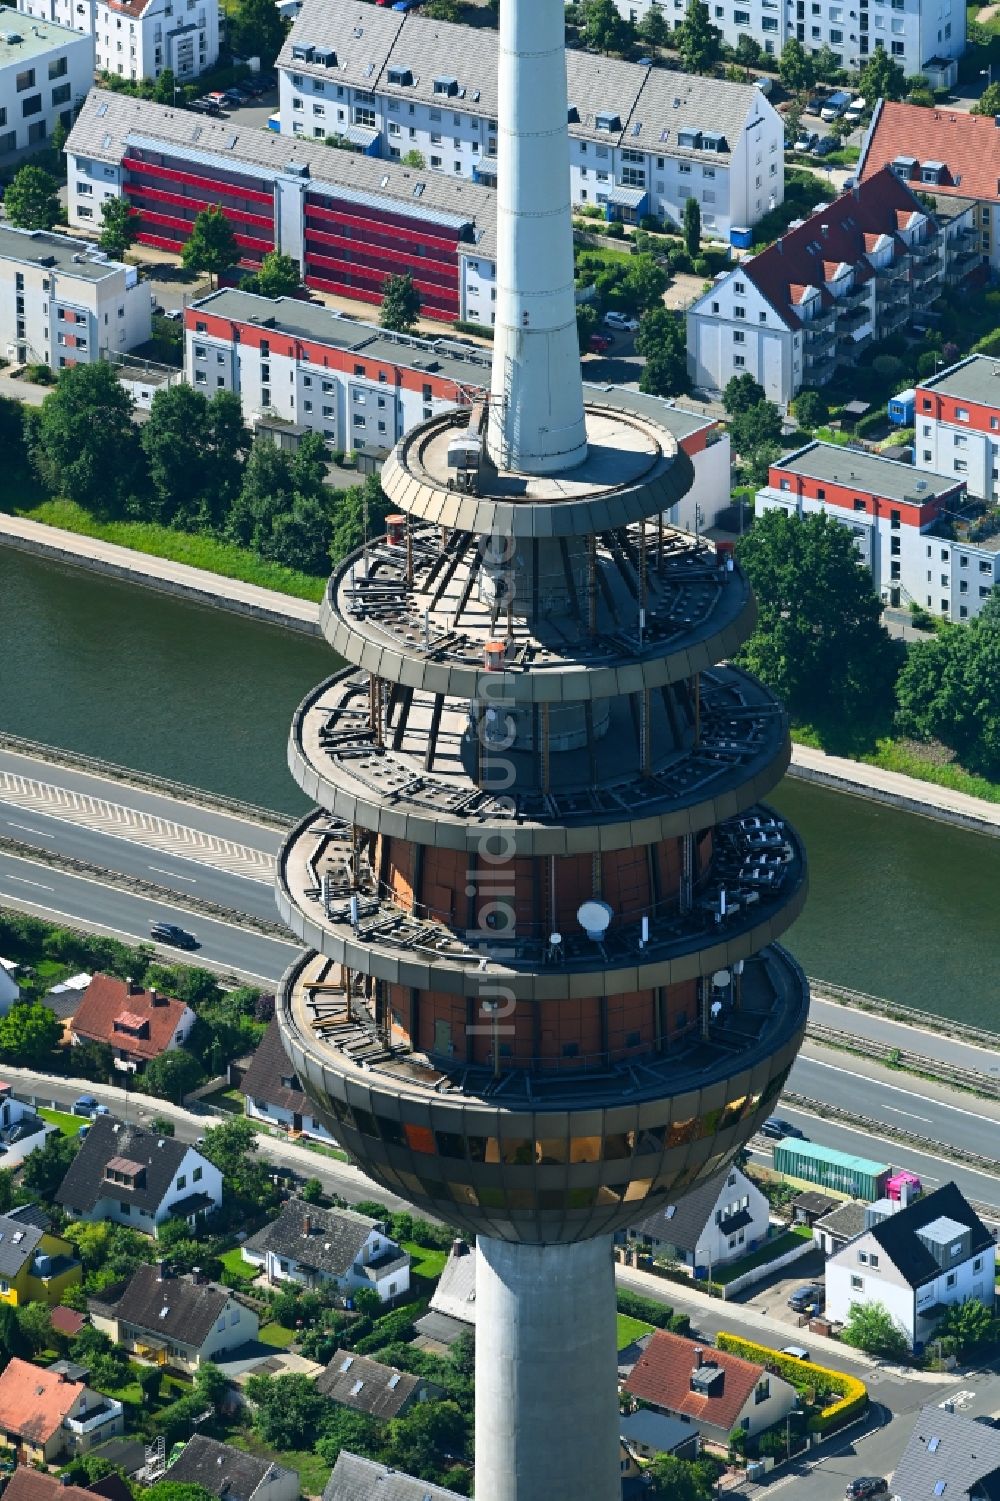 Nürnberg aus der Vogelperspektive: Fernmeldeturm und Fernsehturm in Nürnberg im Bundesland Bayern, Deutschland